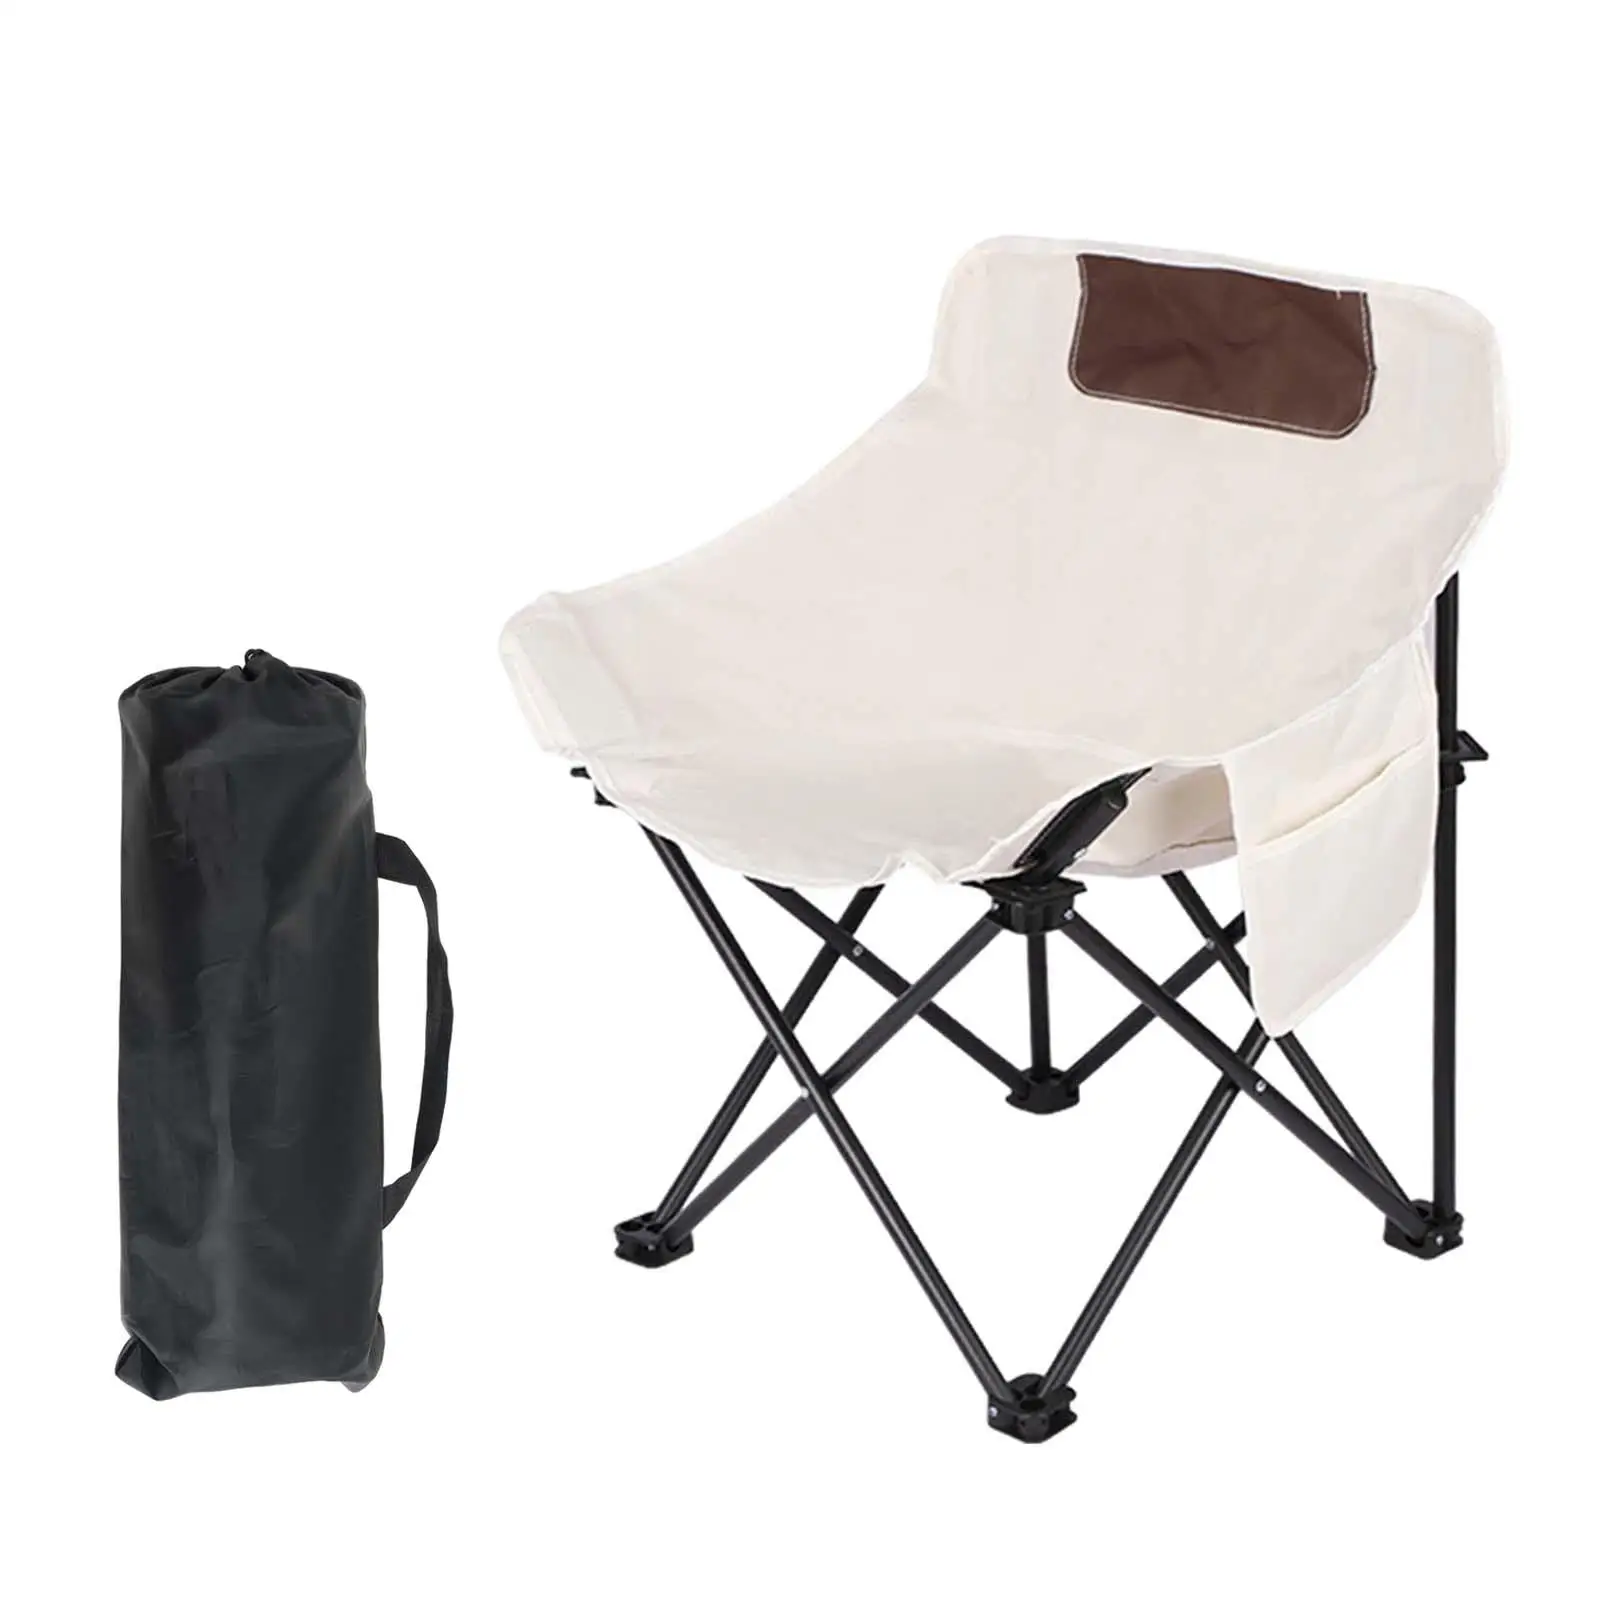 Folding Camping Chair Beach Chair Durable Portable Folded Folding Chair Outdoor Moon Chair for Garden Picnics BBQ Hiking